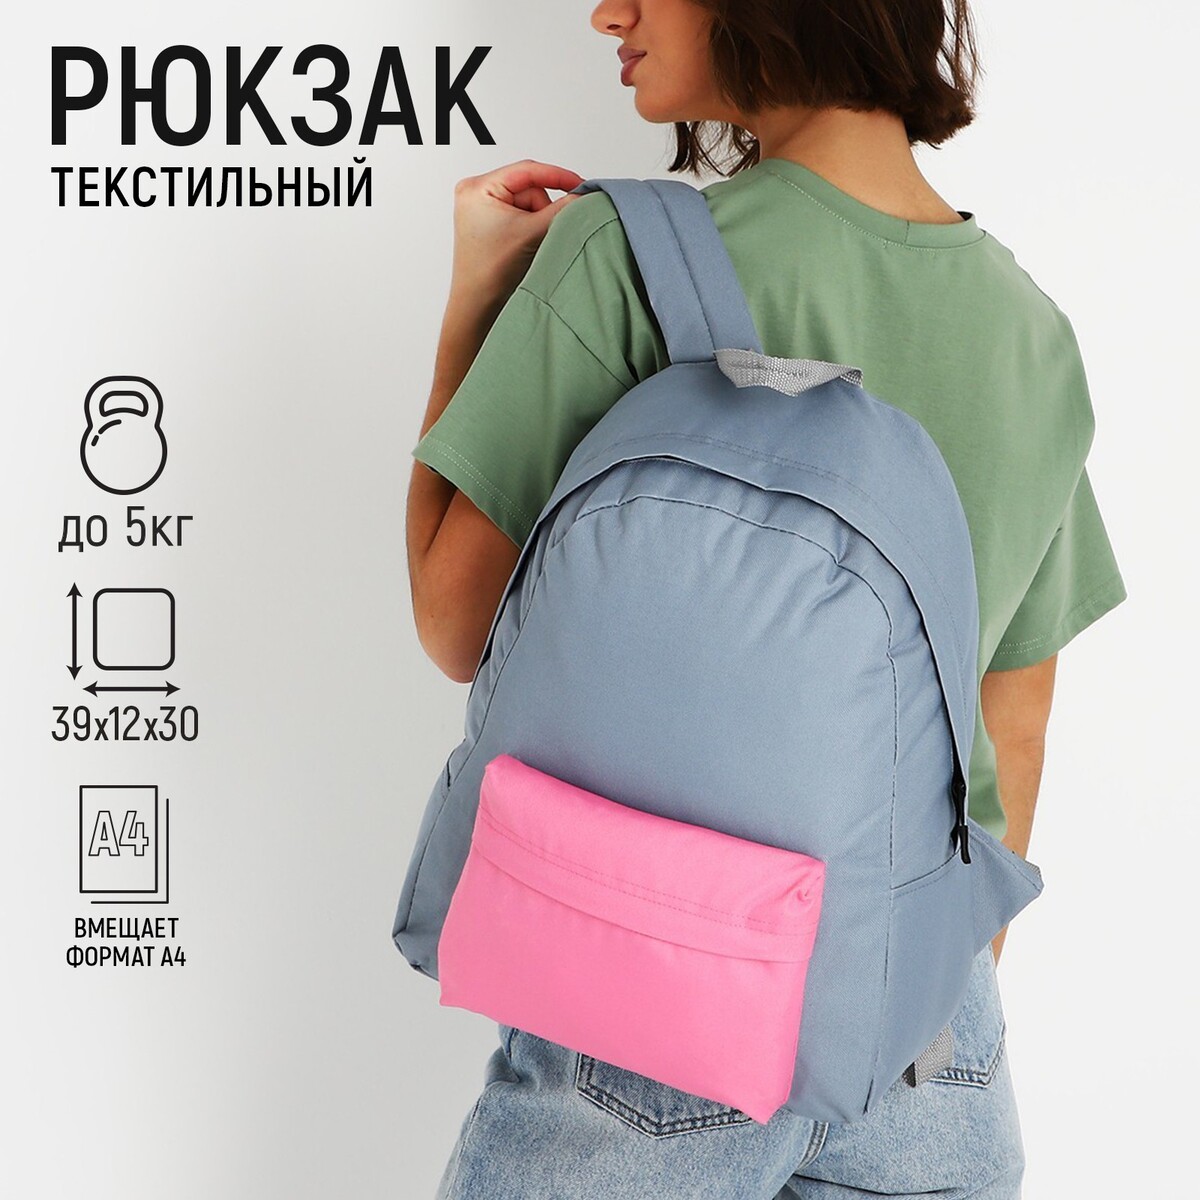 Рюкзак текстильный с цветным карманом, 30х39х12 см, серый/розовый рюкзак текстильный котик с карманом 27 11 37